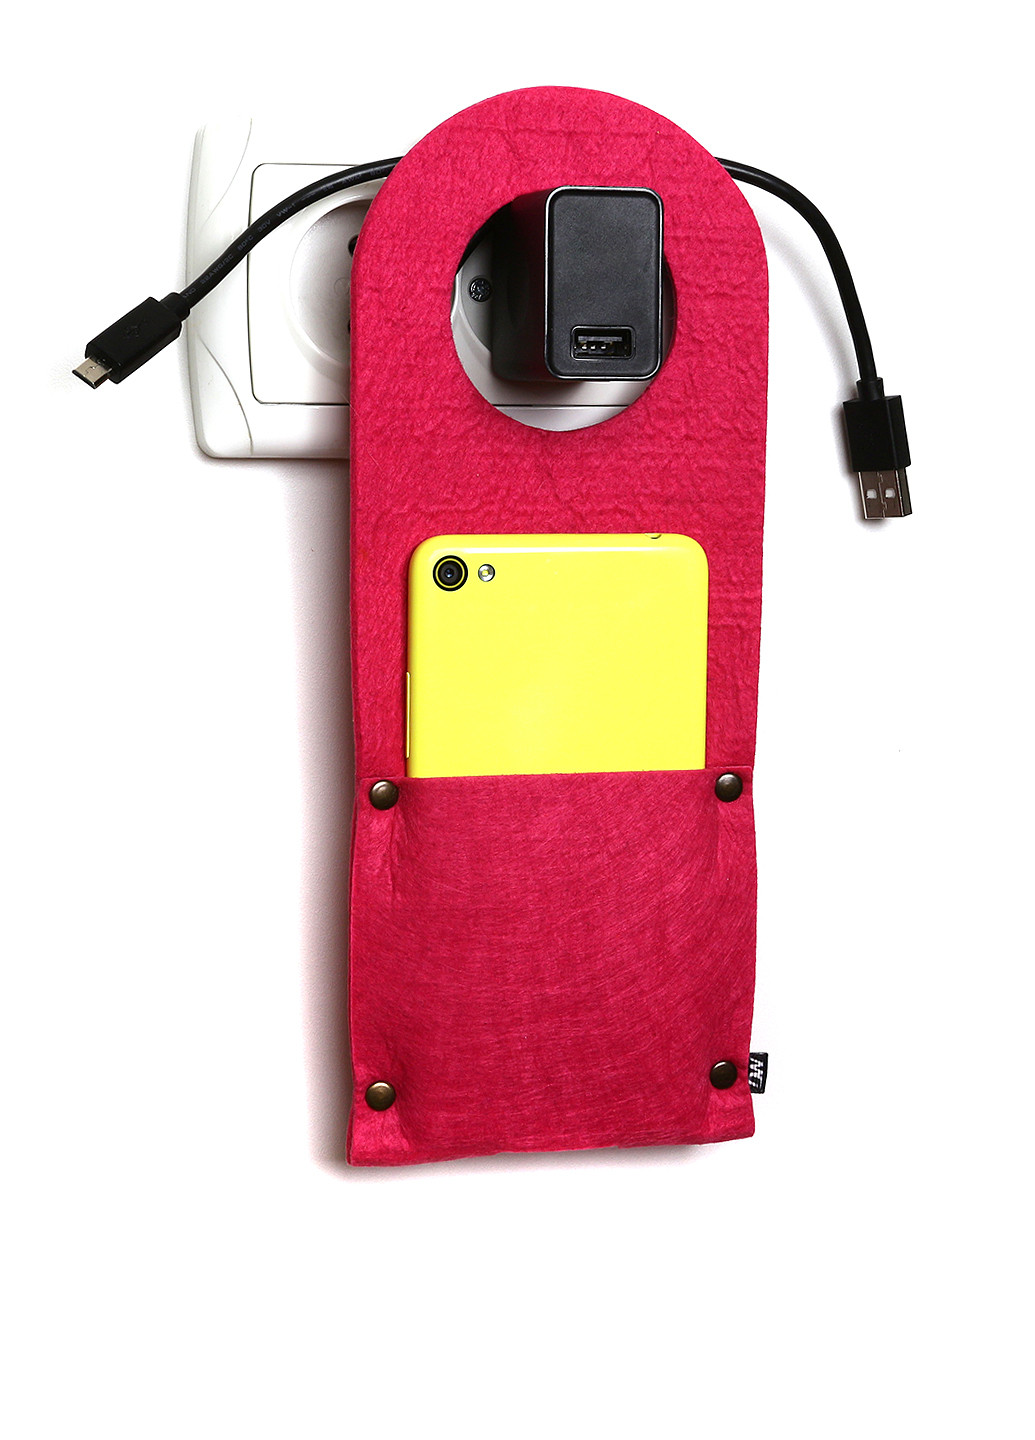 Карман для зарядки телефона на заклепке Digital Wool (25129411)